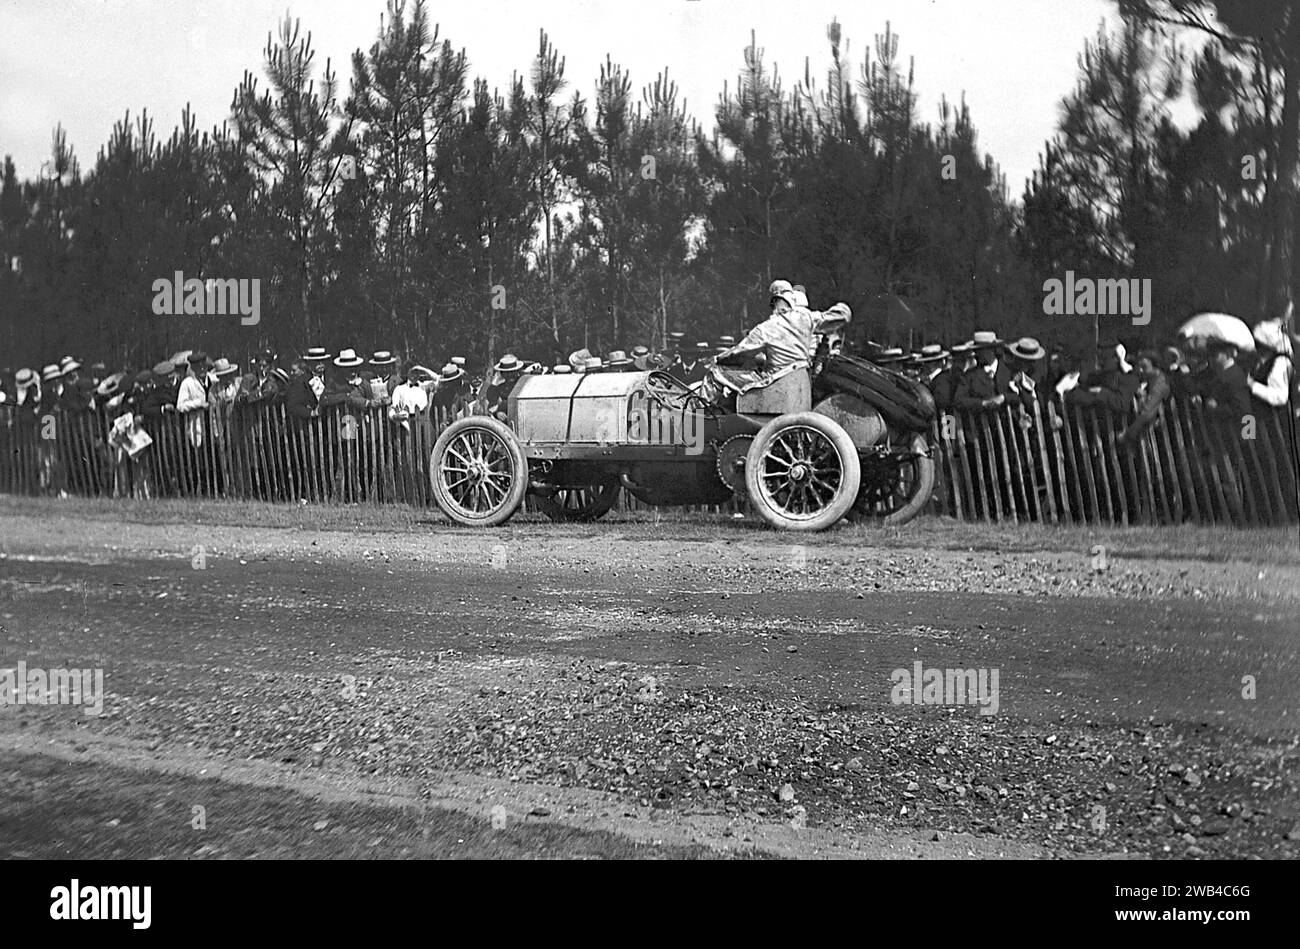 Prima edizione della 24 ore di le Mans endurance sport car race (24 heures du Mans). 26 e 27 giugno 1906. La Mercedes II guidata da Mariaux. Foto di Jean de Biré Foto Stock